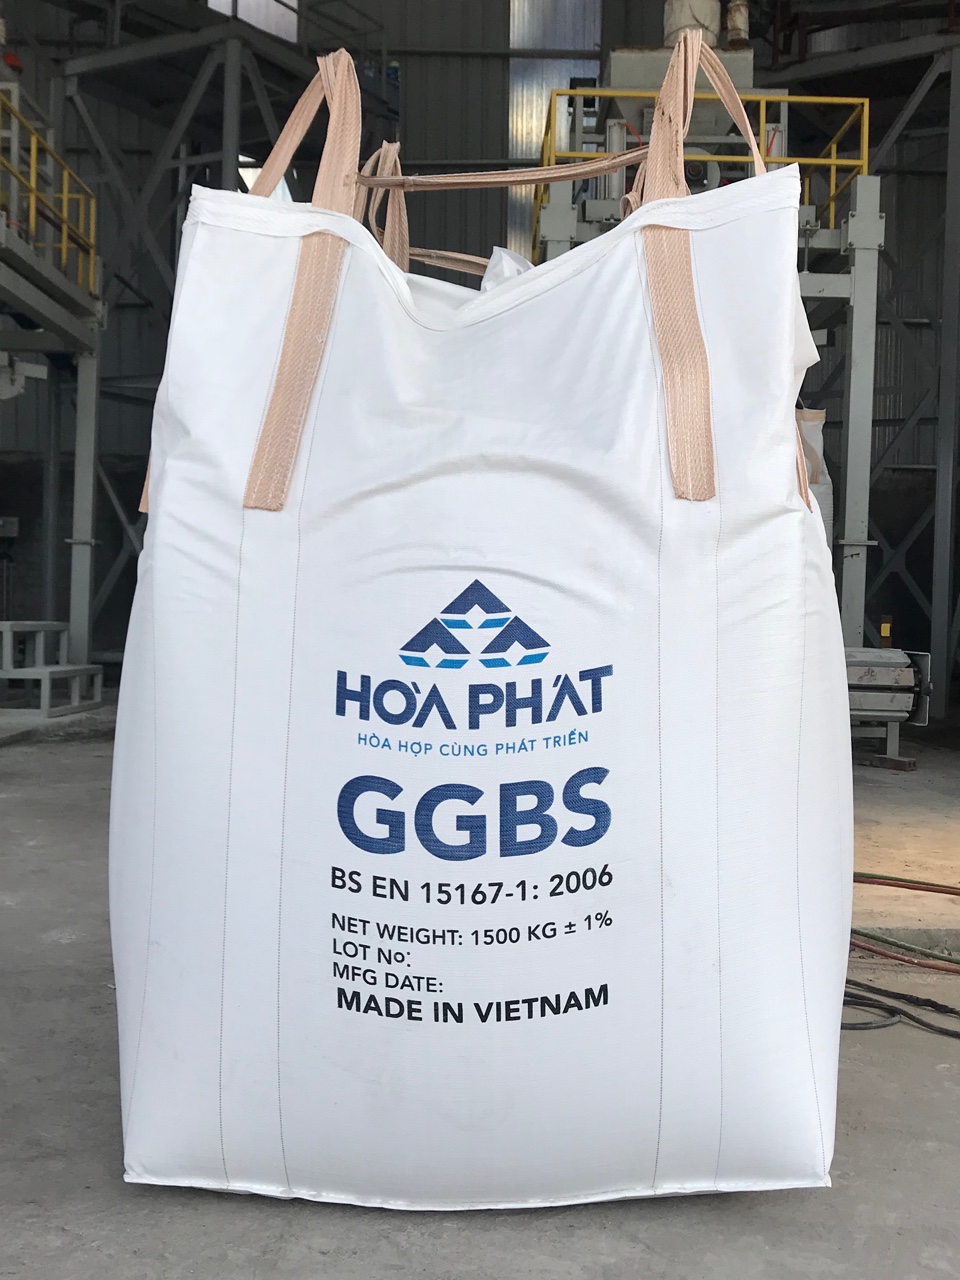 Bao xỉ hạt lò cao nghiền mịn (GGBS) xuất khẩu.